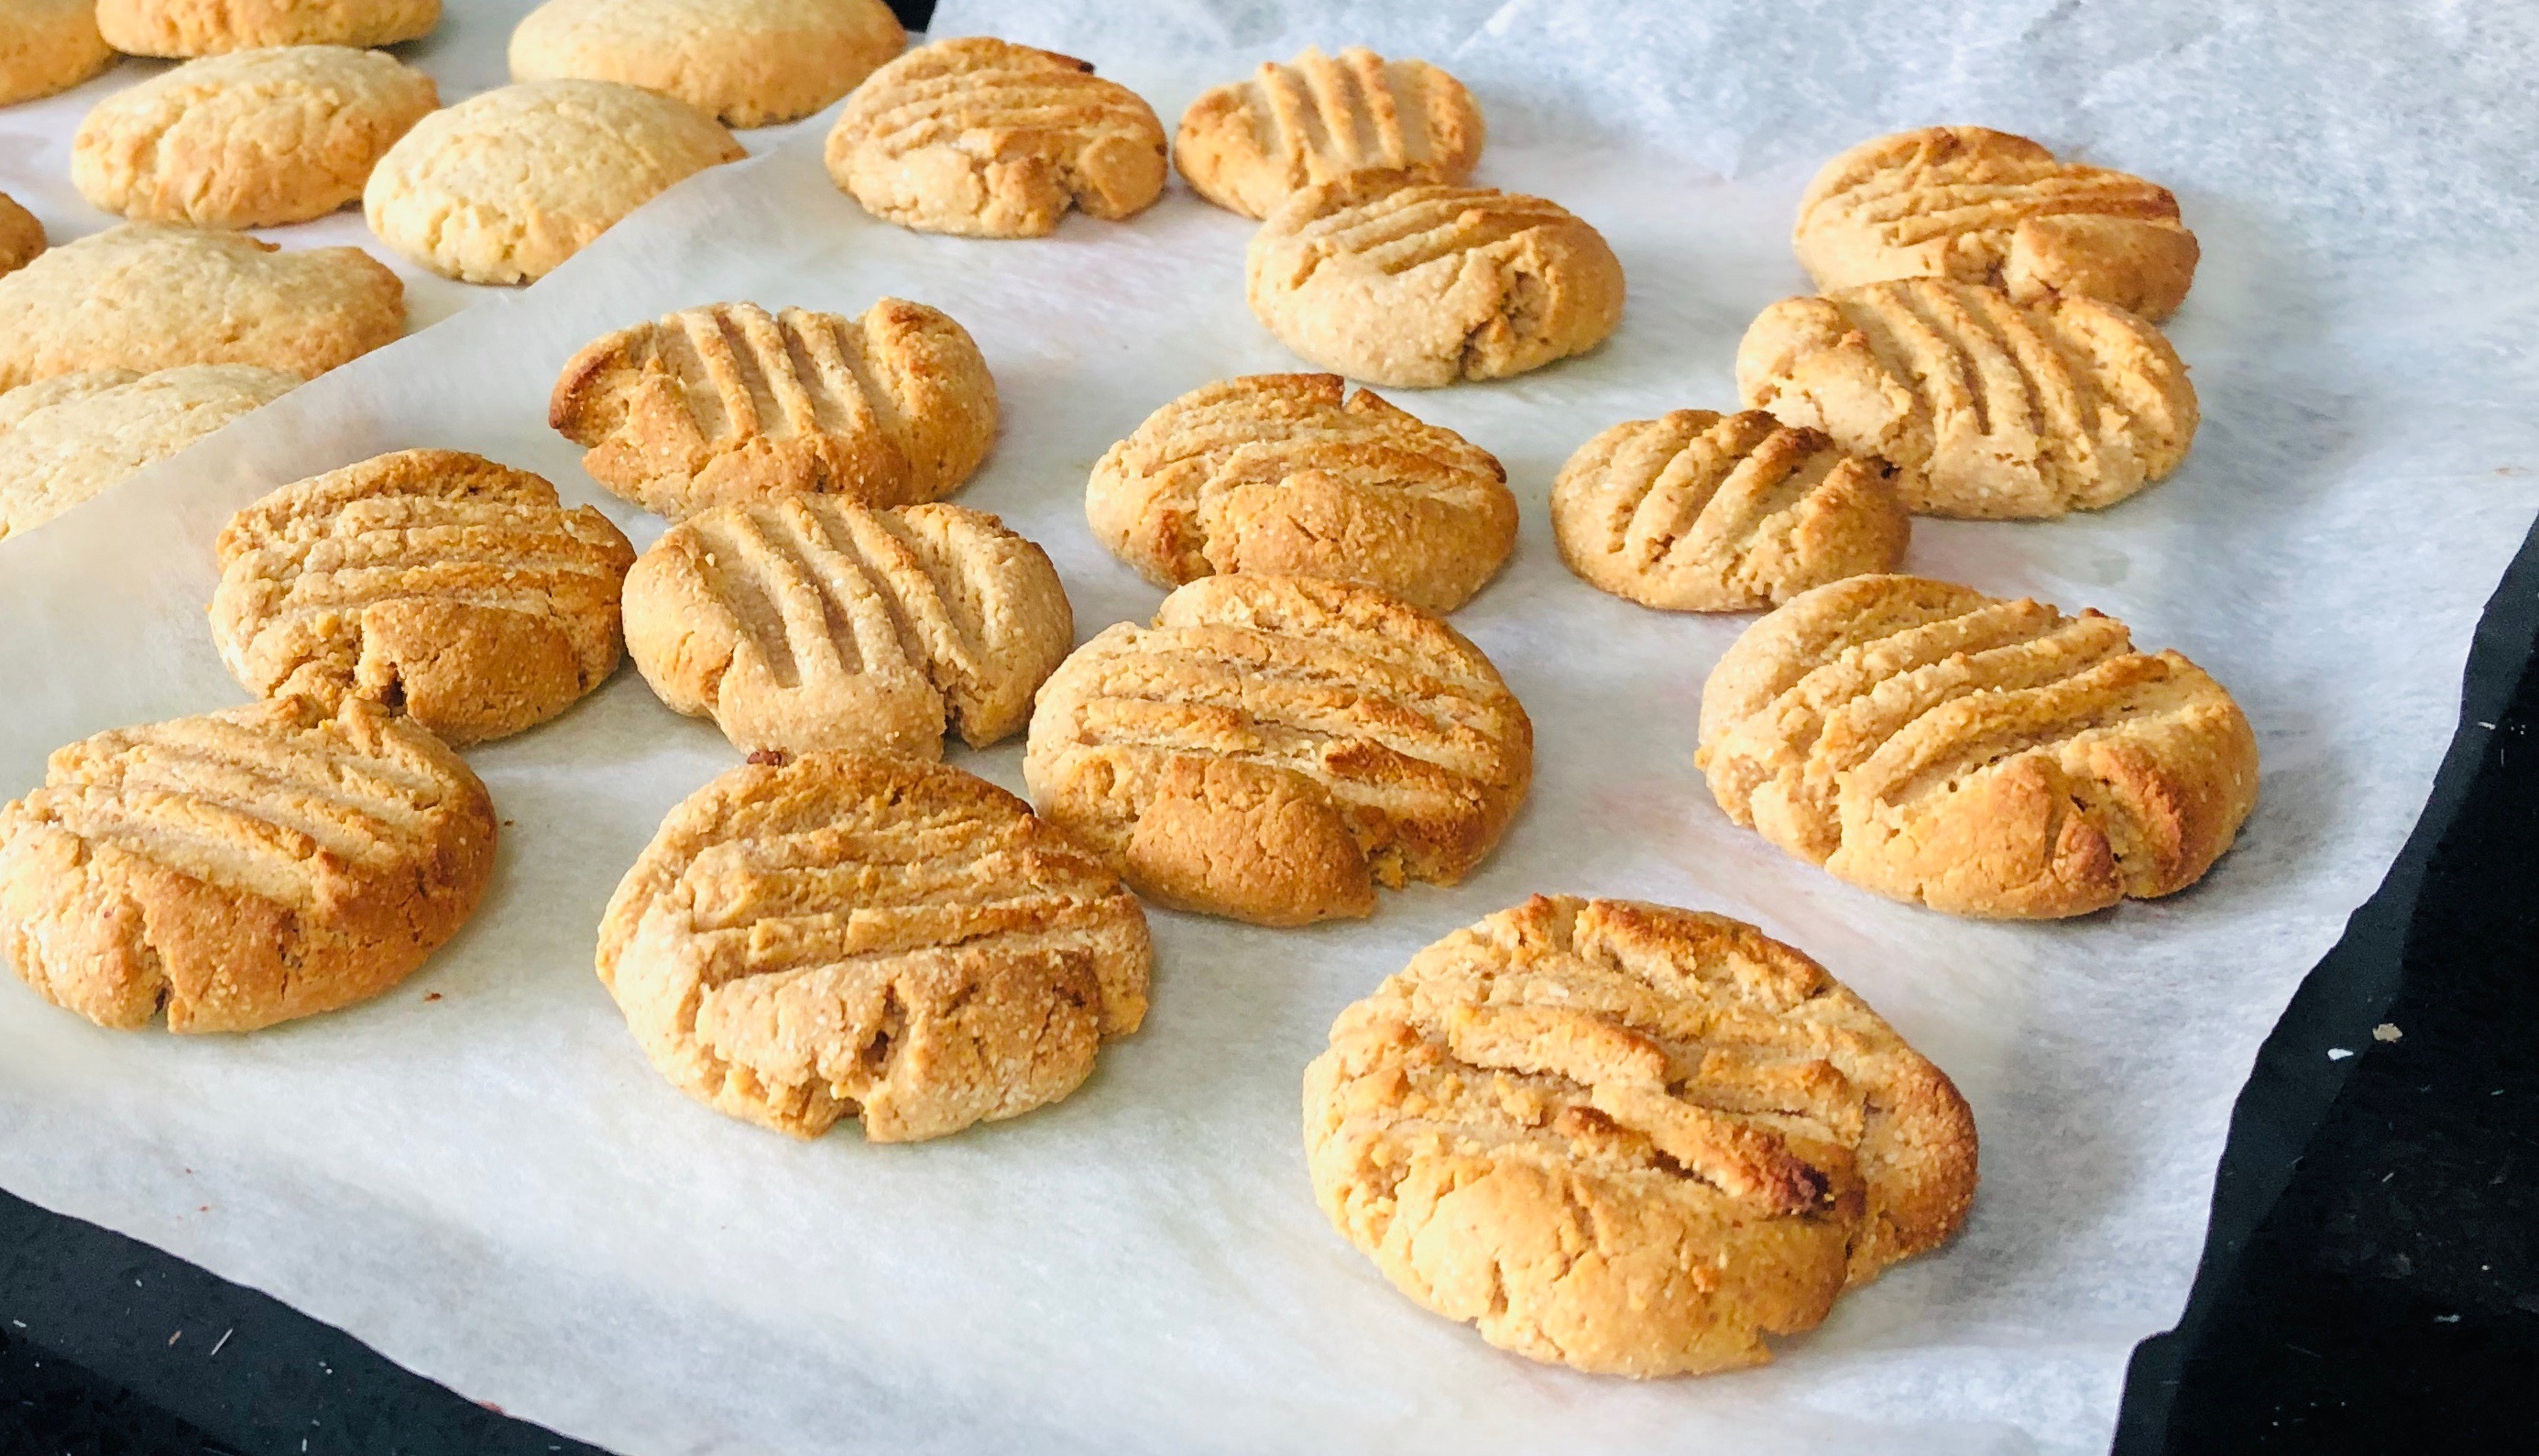 Peanut butter cookies – 4 ingredients!